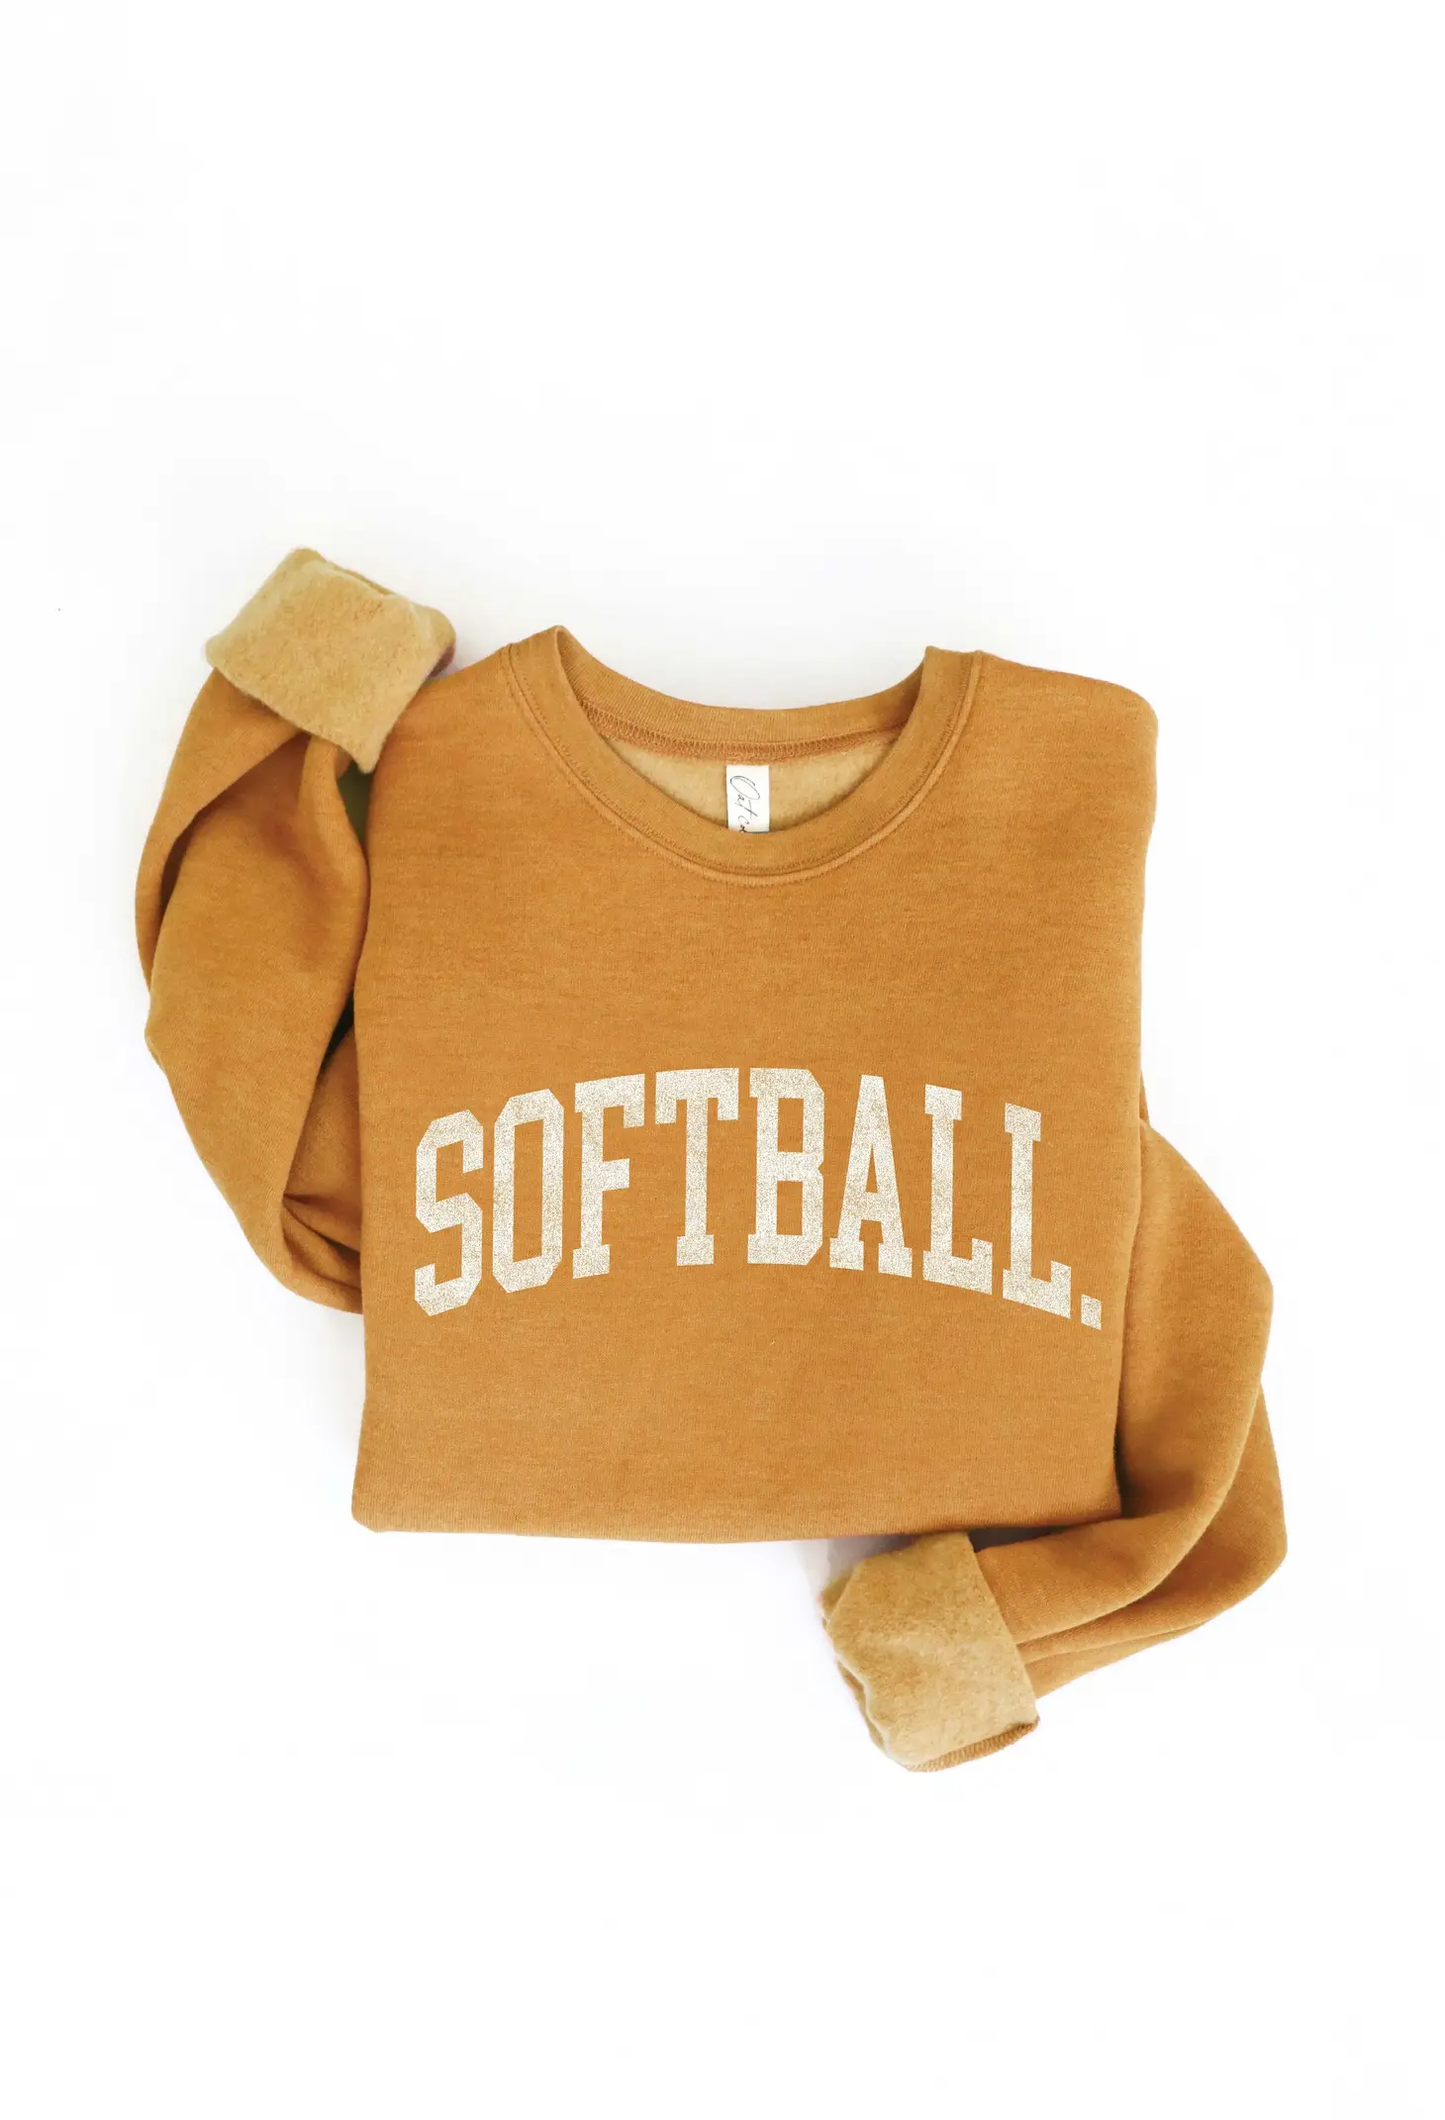 SOFTBALL - Graphic Sweatshirt - Heather Mustard